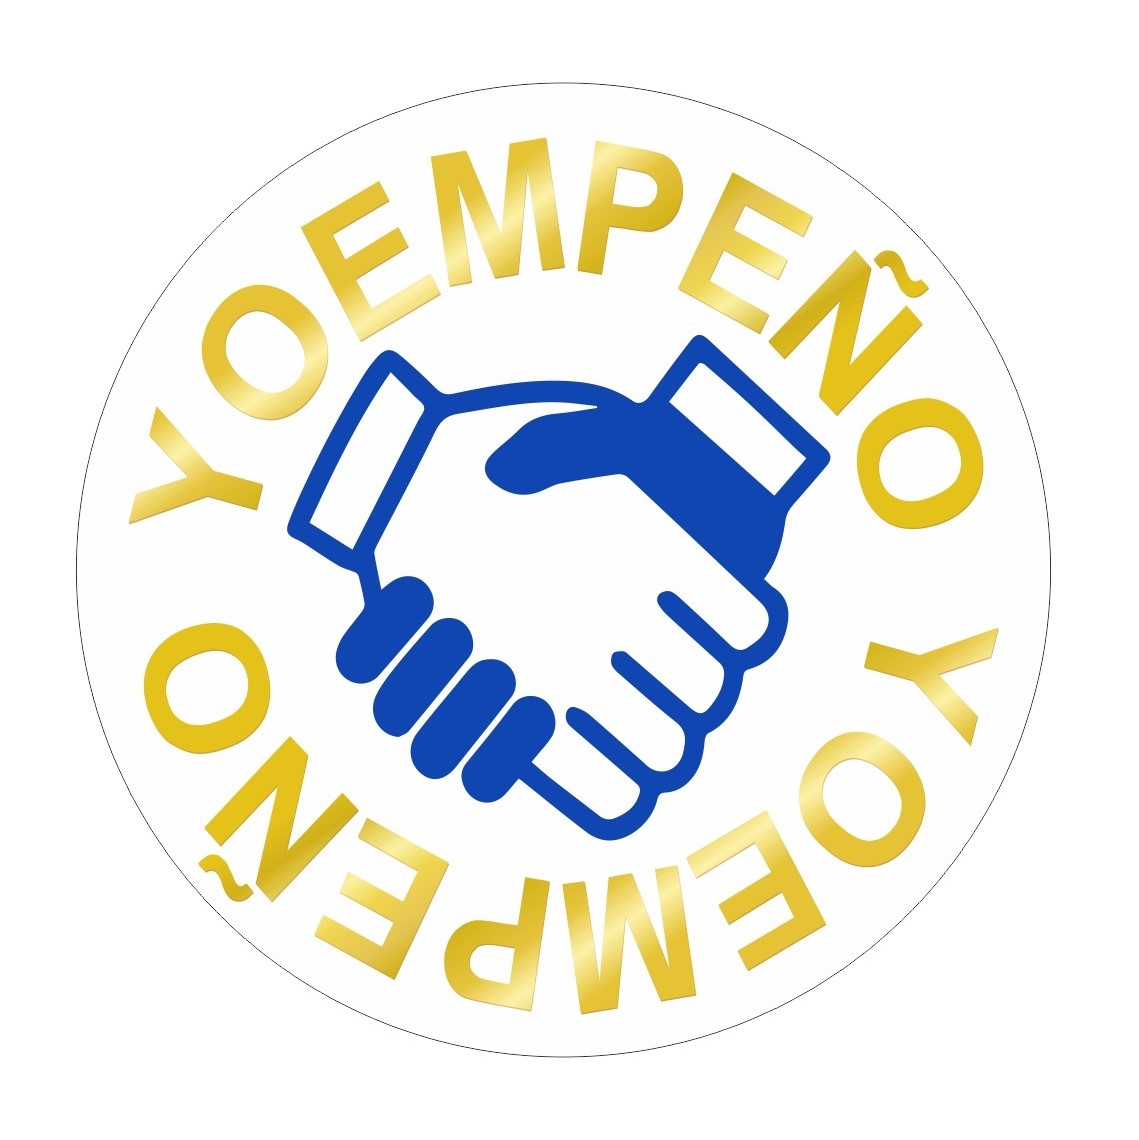 Icono de un apretón de manos rodeado de letras doradas donde pone "YO EMPEÑO"